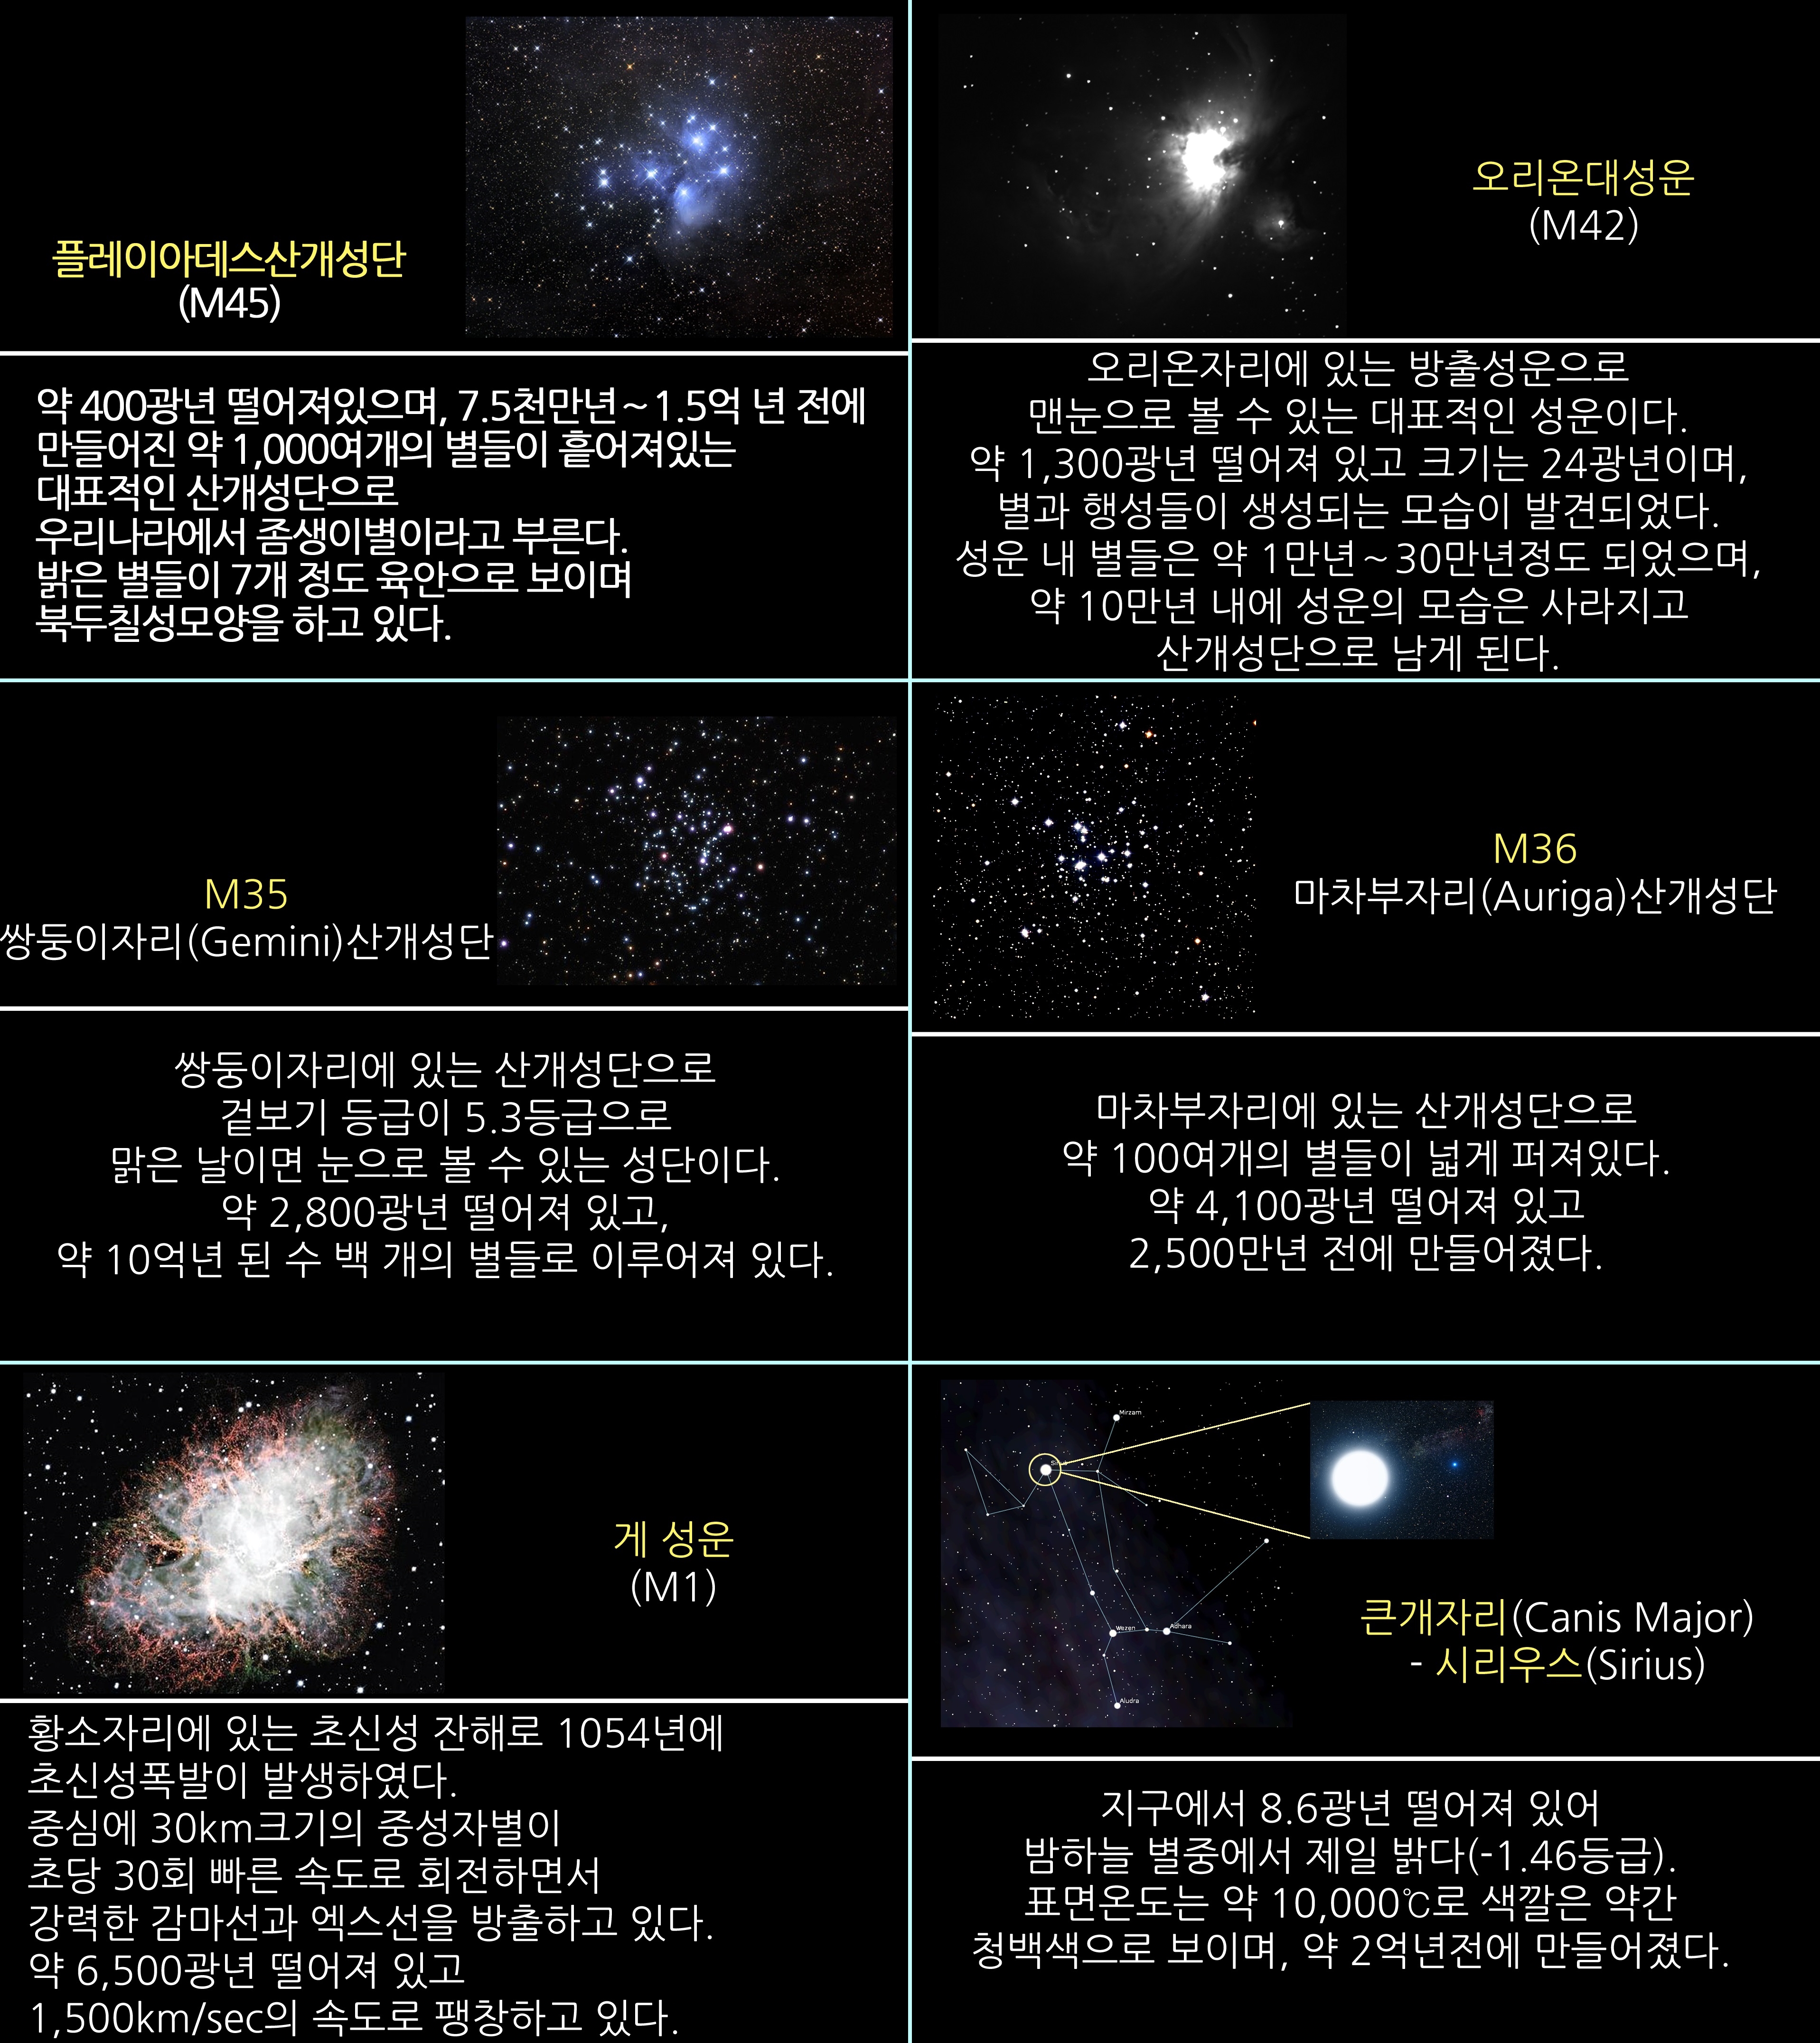 2017년 2월 주요 천체관측 대상